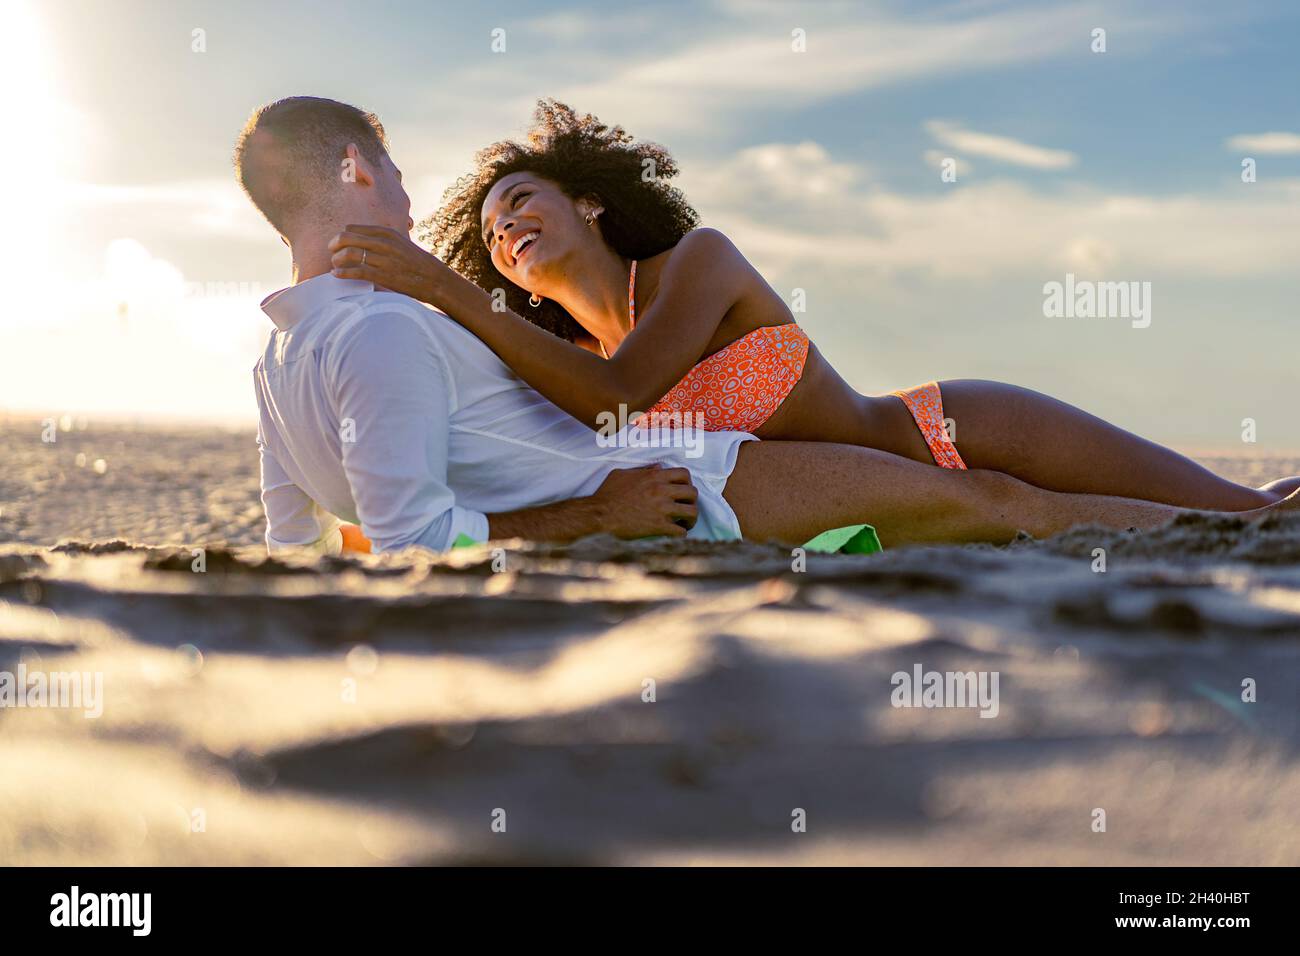 Un jeune couple romantique multiracial se caresse teneusement l'un l'autre allongé sur la plage au coucher du soleil - couple multiracial romantique sur la plage - Amour et tra Banque D'Images